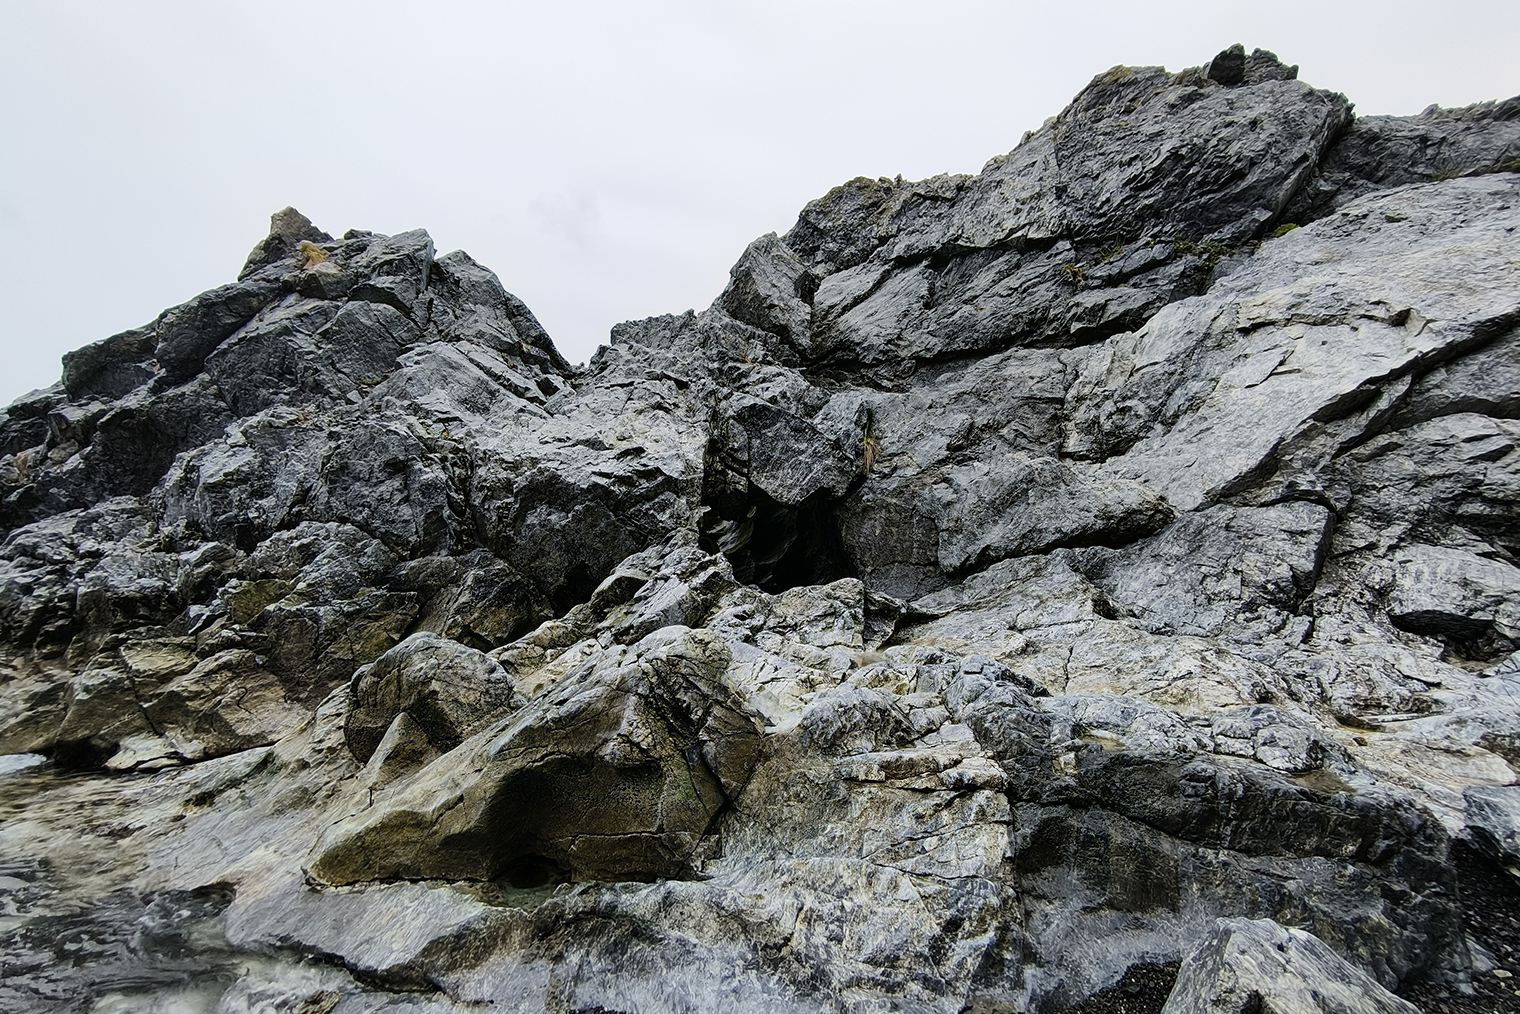 Снимок сделан в бухте под дождем. Мокрые скалы получились фактурными: можно разглядеть все прожилки, трещины и разломы